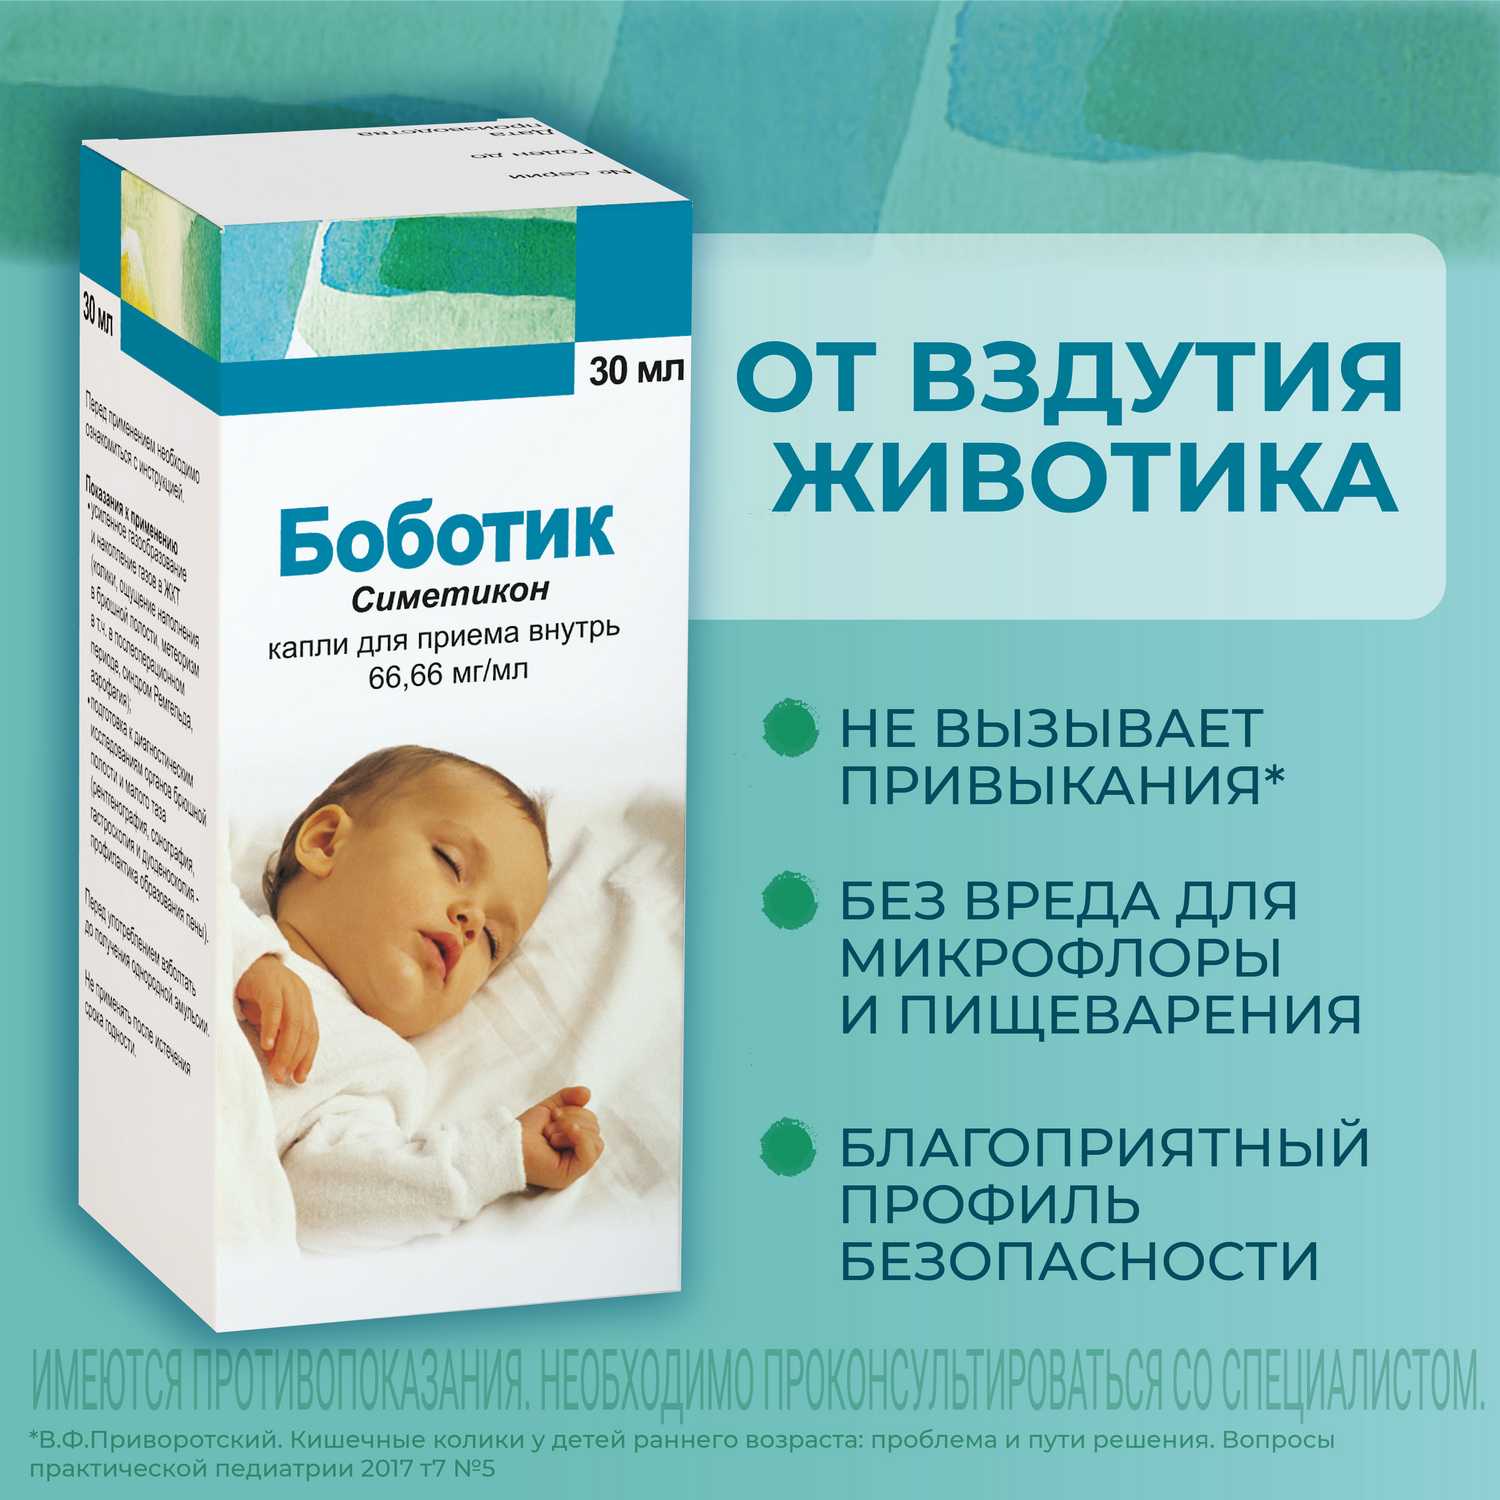 Боботик сколько можно давать. Боботик симетикон. Лекарство боботик для новорожденных. Боботик капли 66,66мг/мл 30мл. Боботик симетикон для новорожденных.